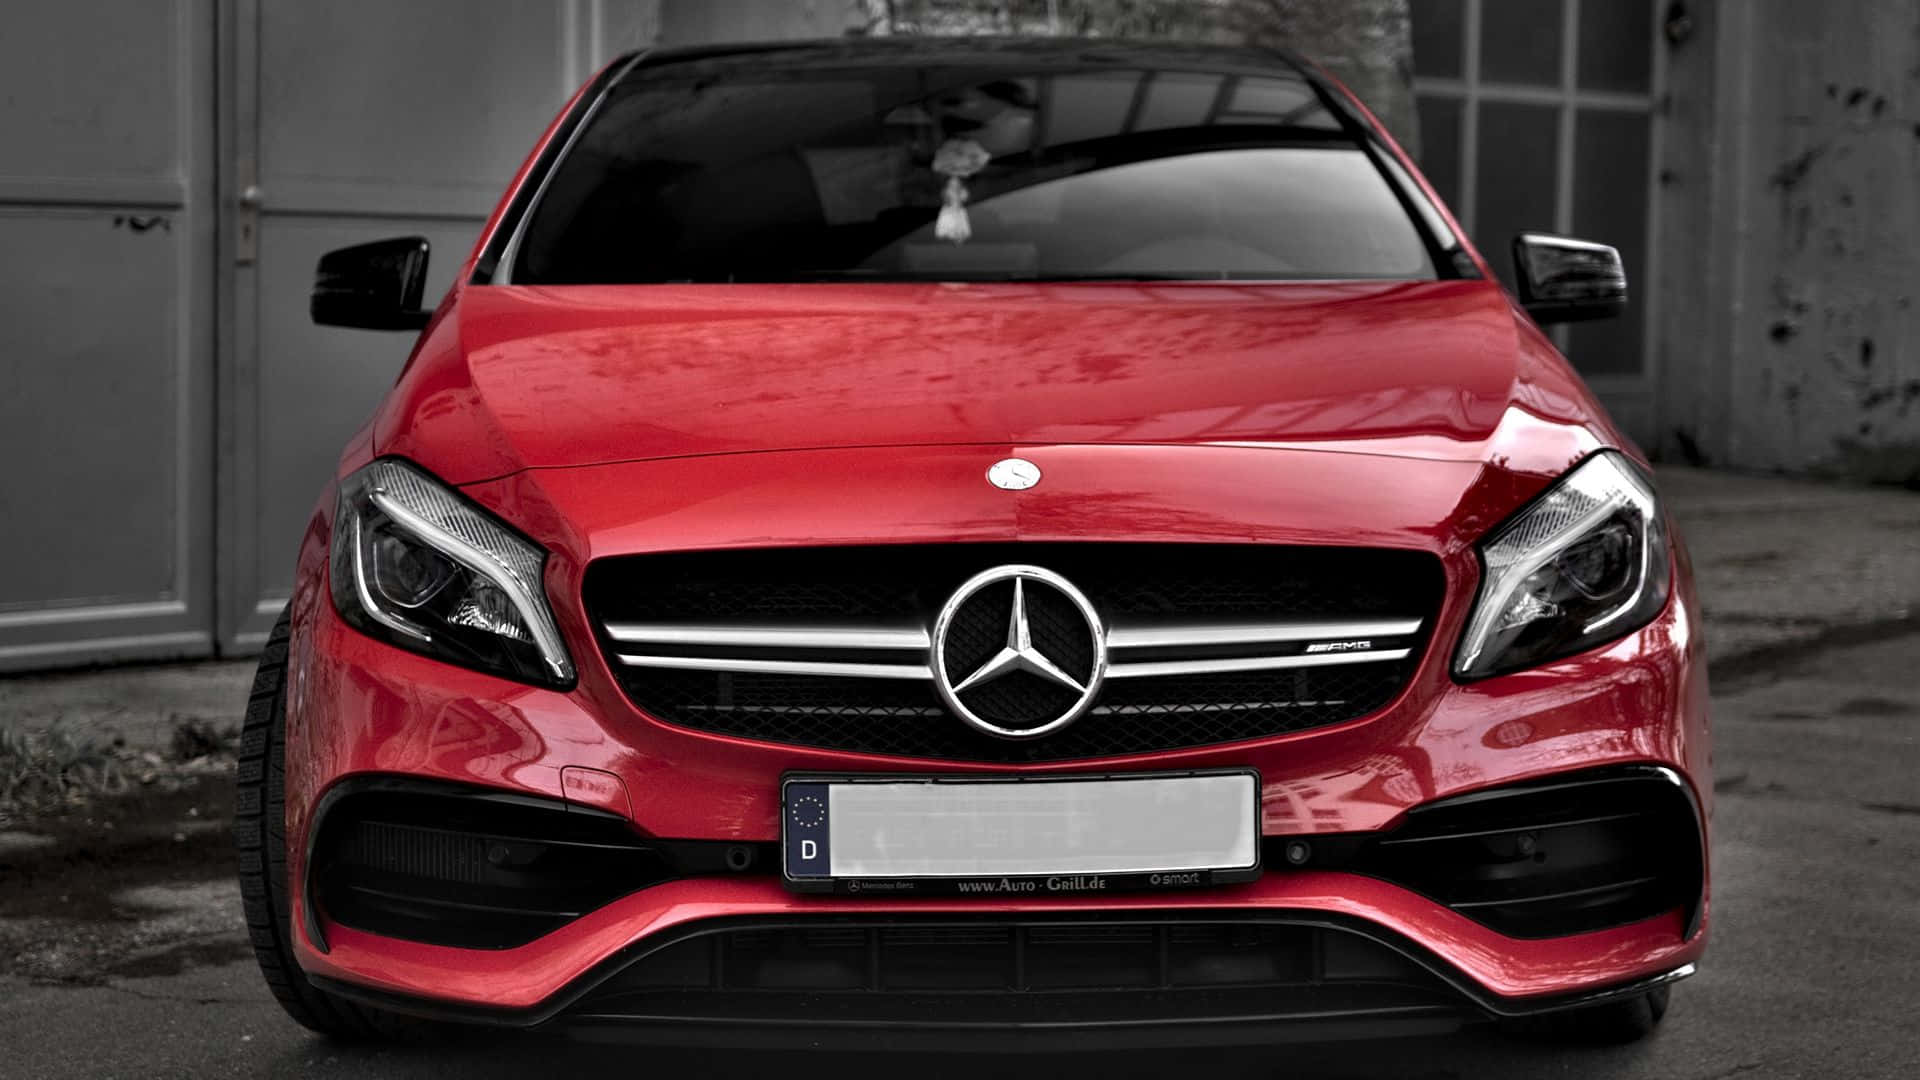 Cool Red Mercedes Benz Car Hd Wallpaper